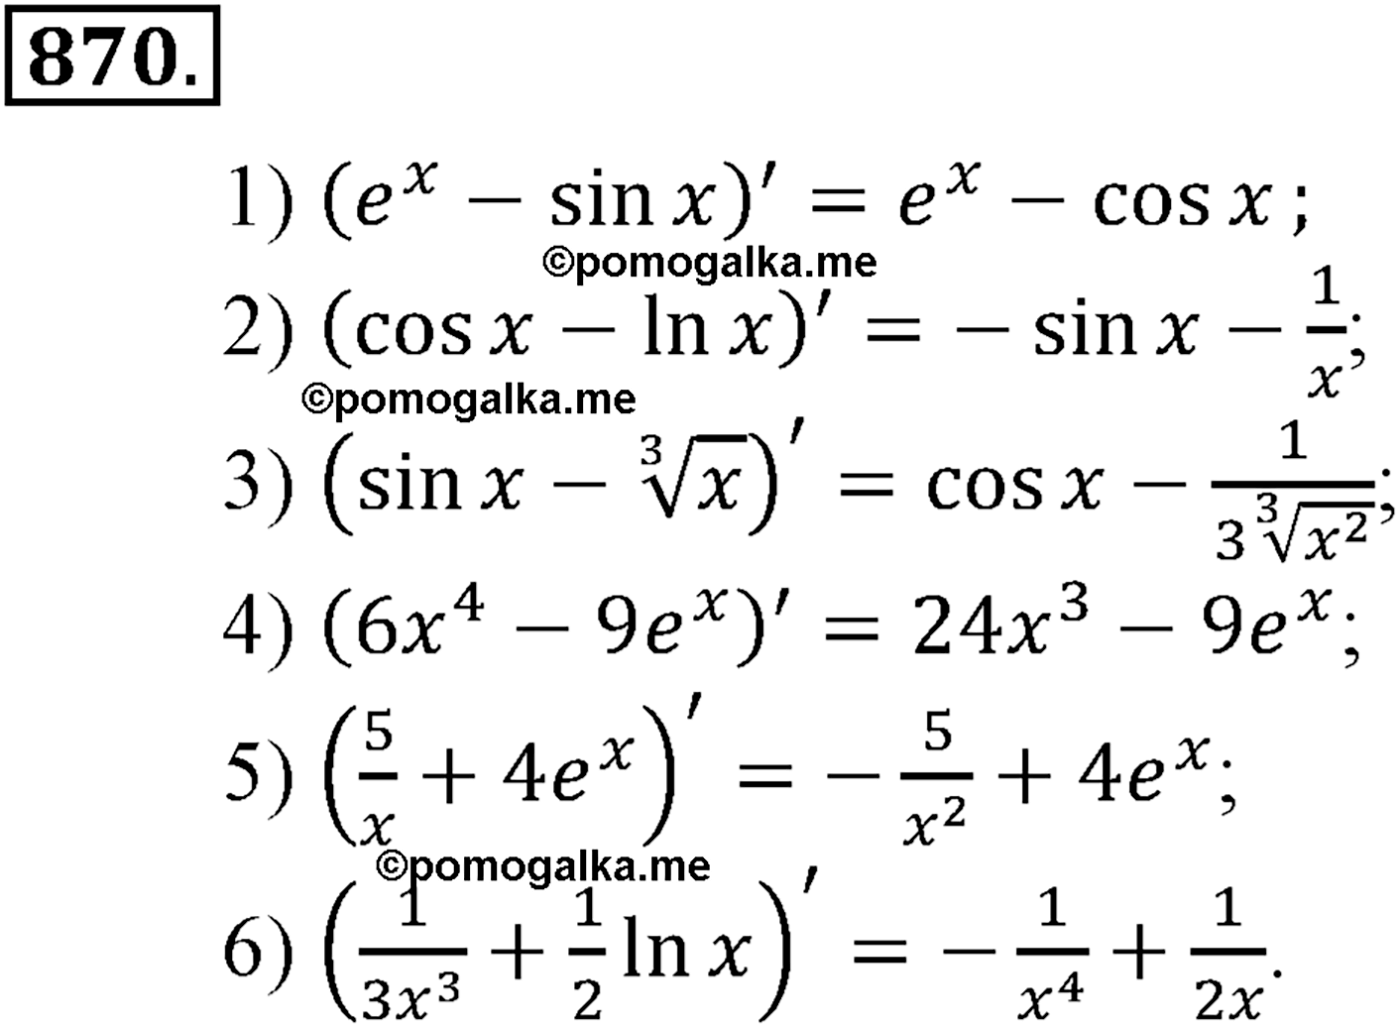 разбор задачи №870 по алгебре за 10-11 класс из учебника Алимова, Колягина